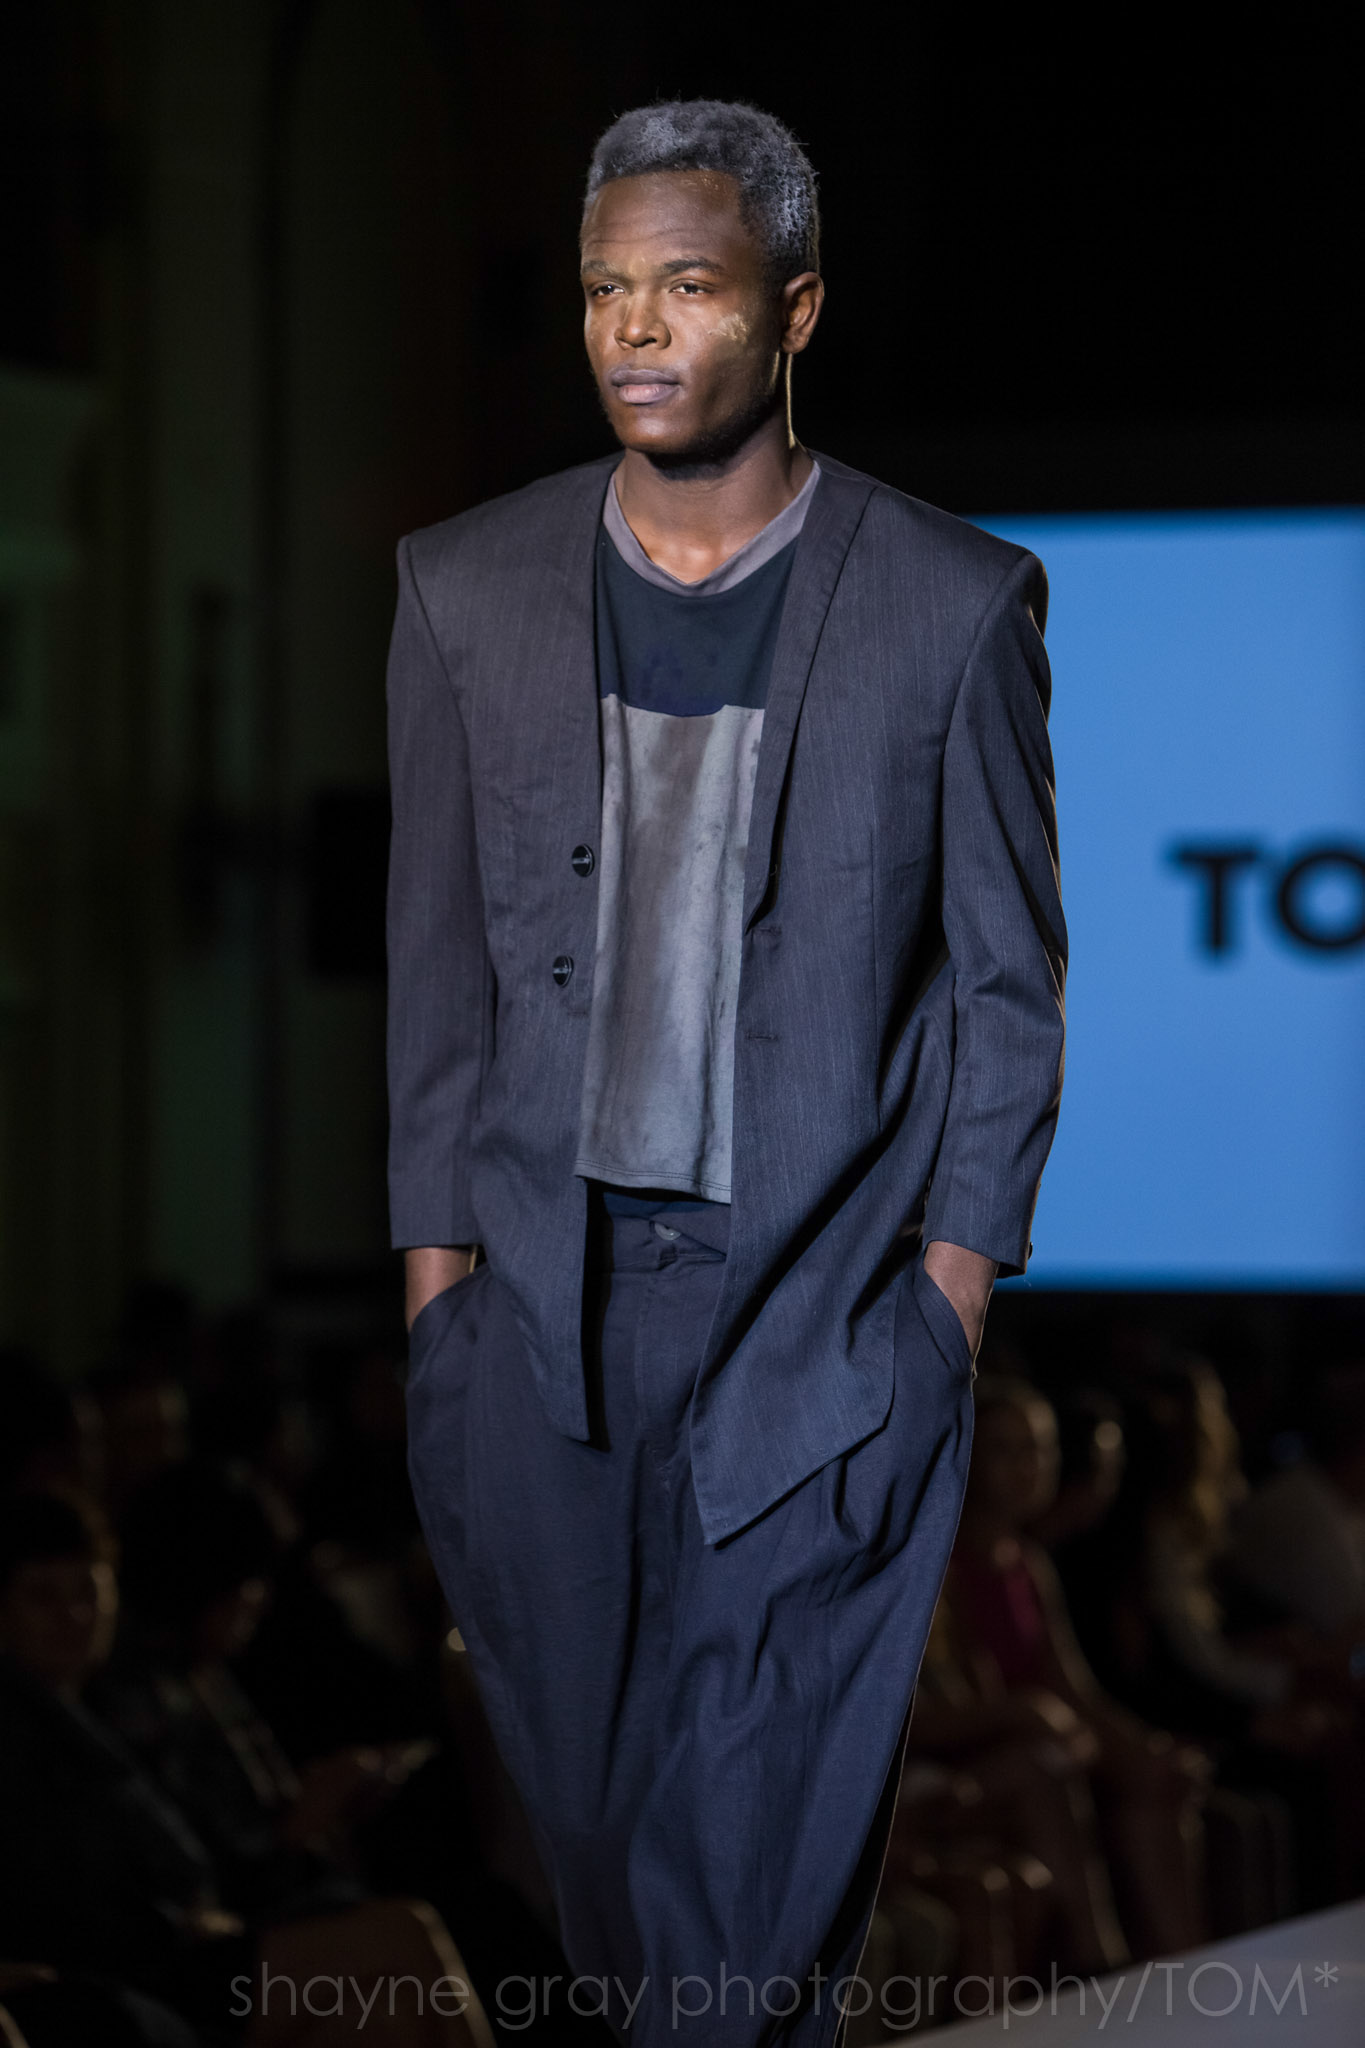 Shayne-Gray-Toronto-men's-fashion_week-TOM-jose-duran-7698.jpg